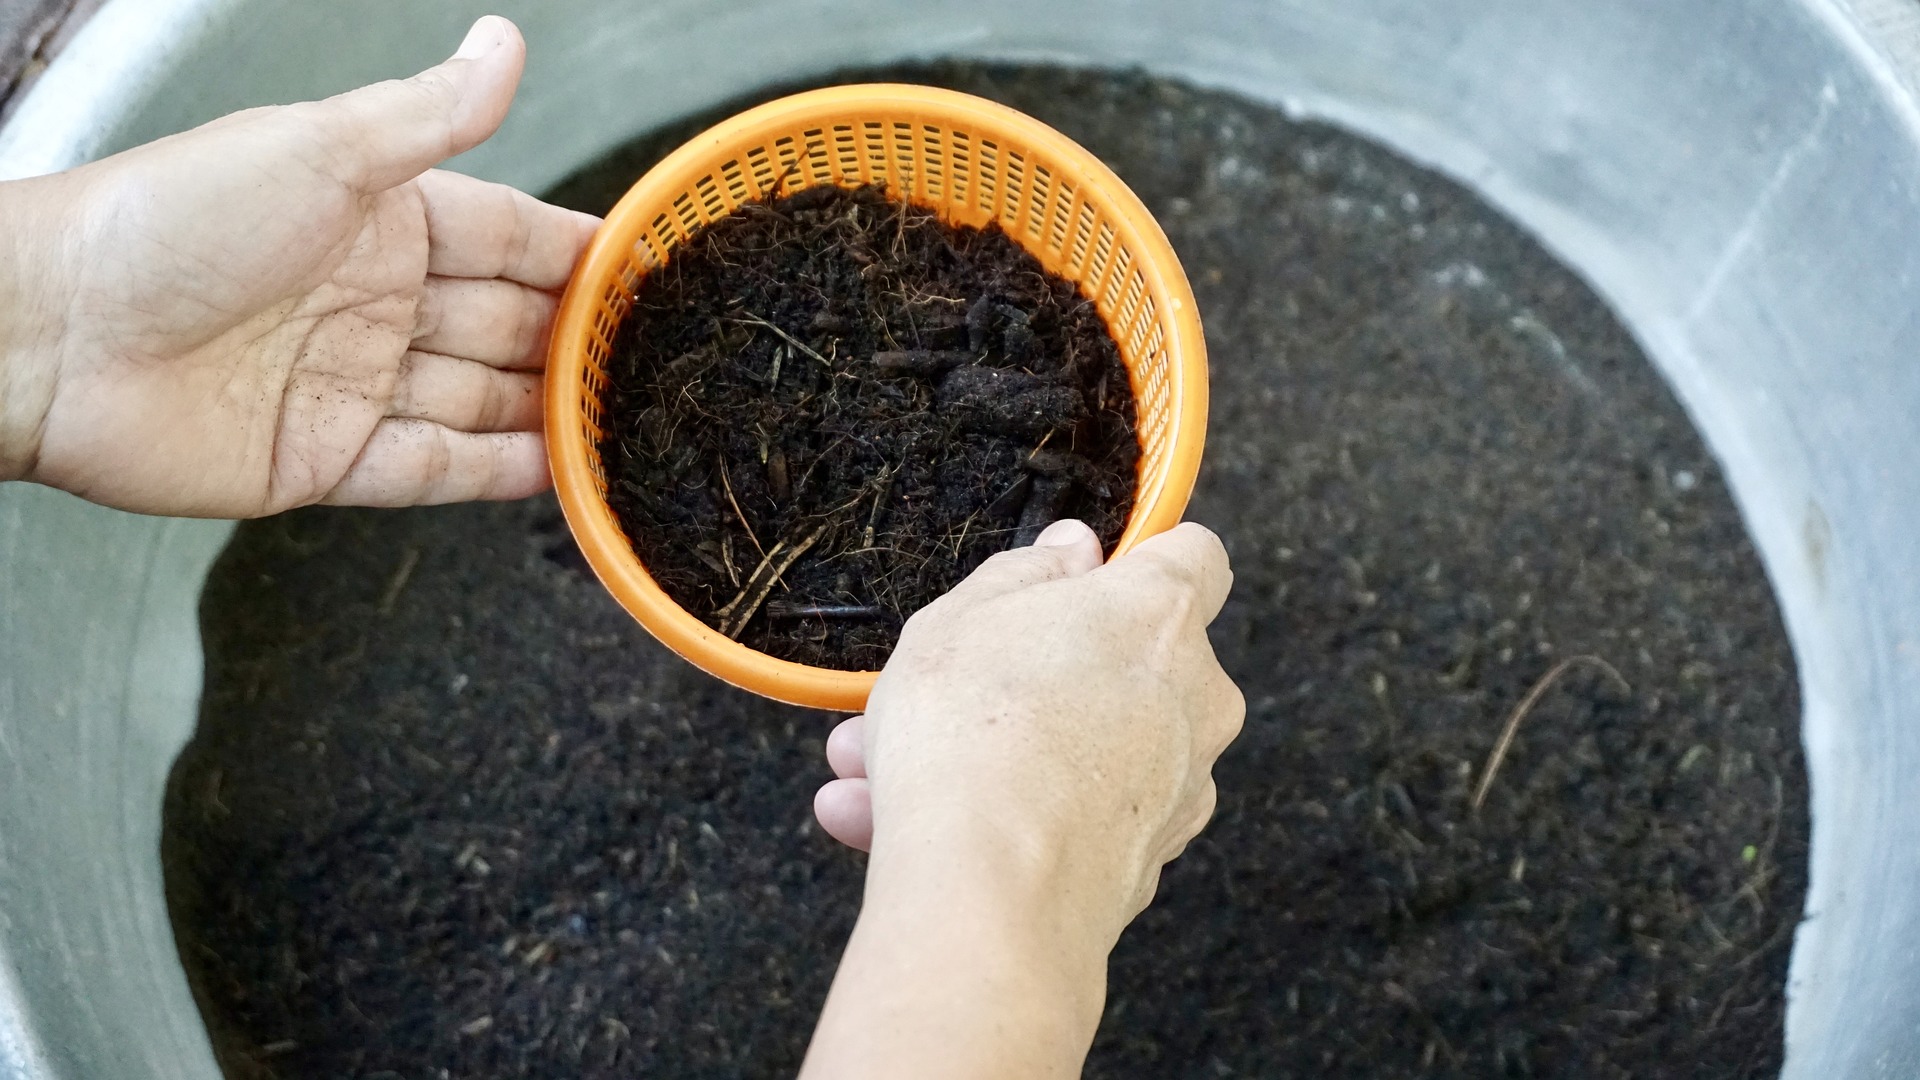 Basics of soil preparation for planting